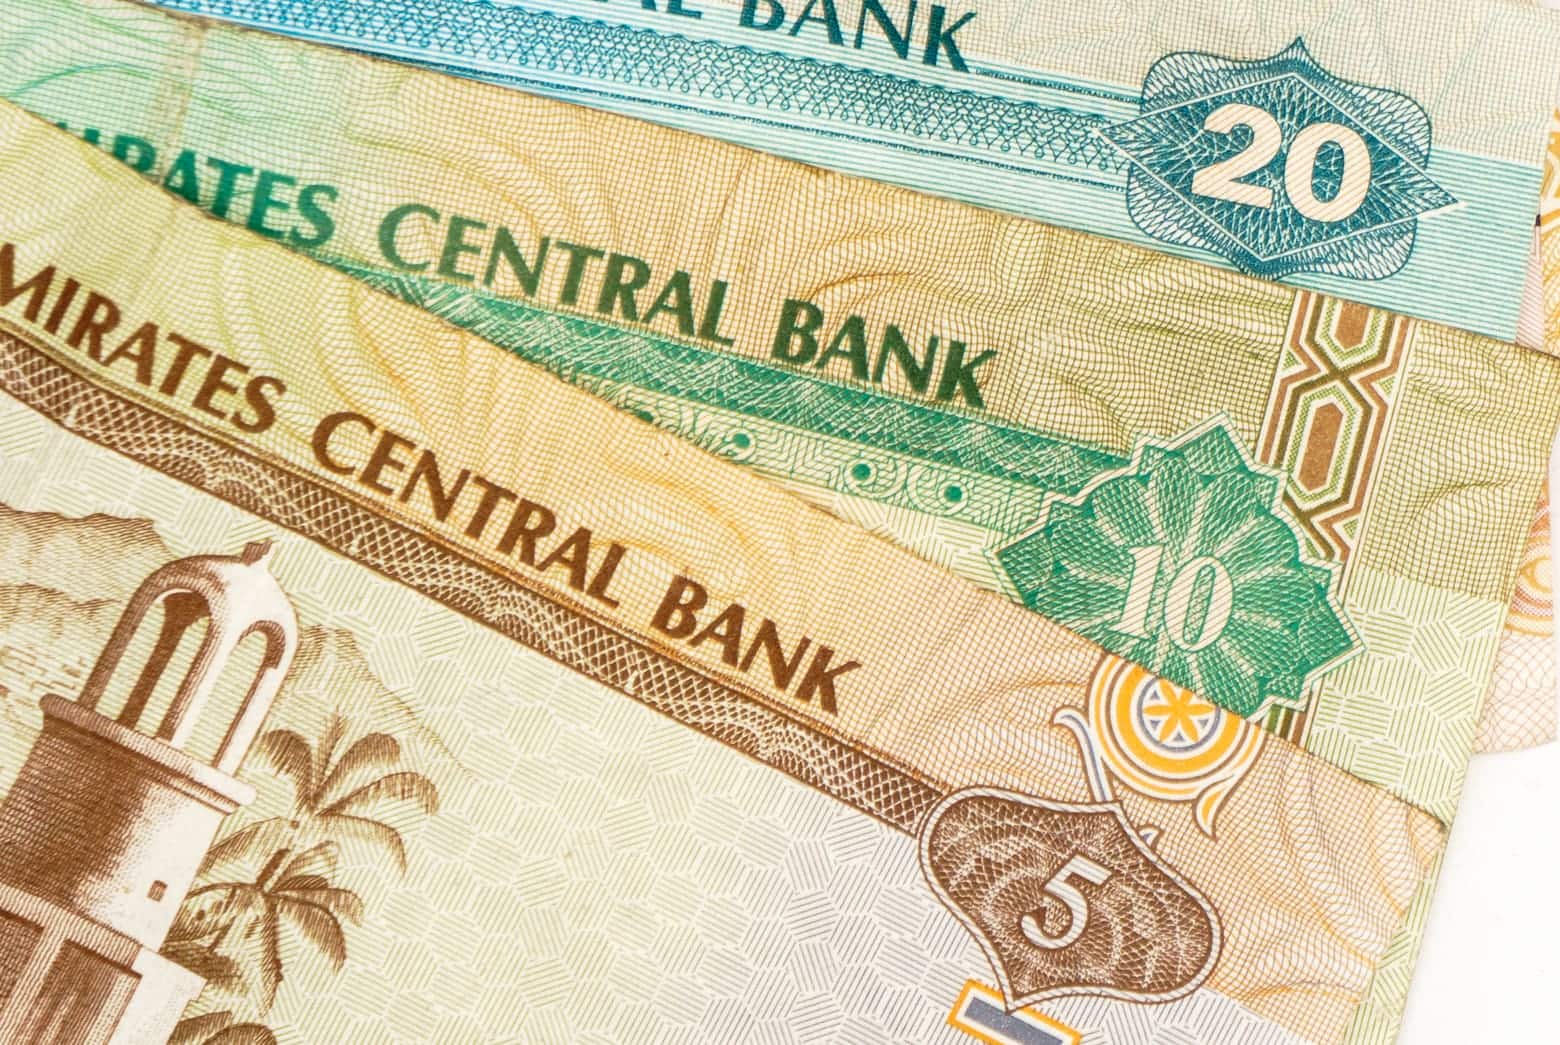 UAEディルハム紙幣 (アラブ首長国連邦) - その他